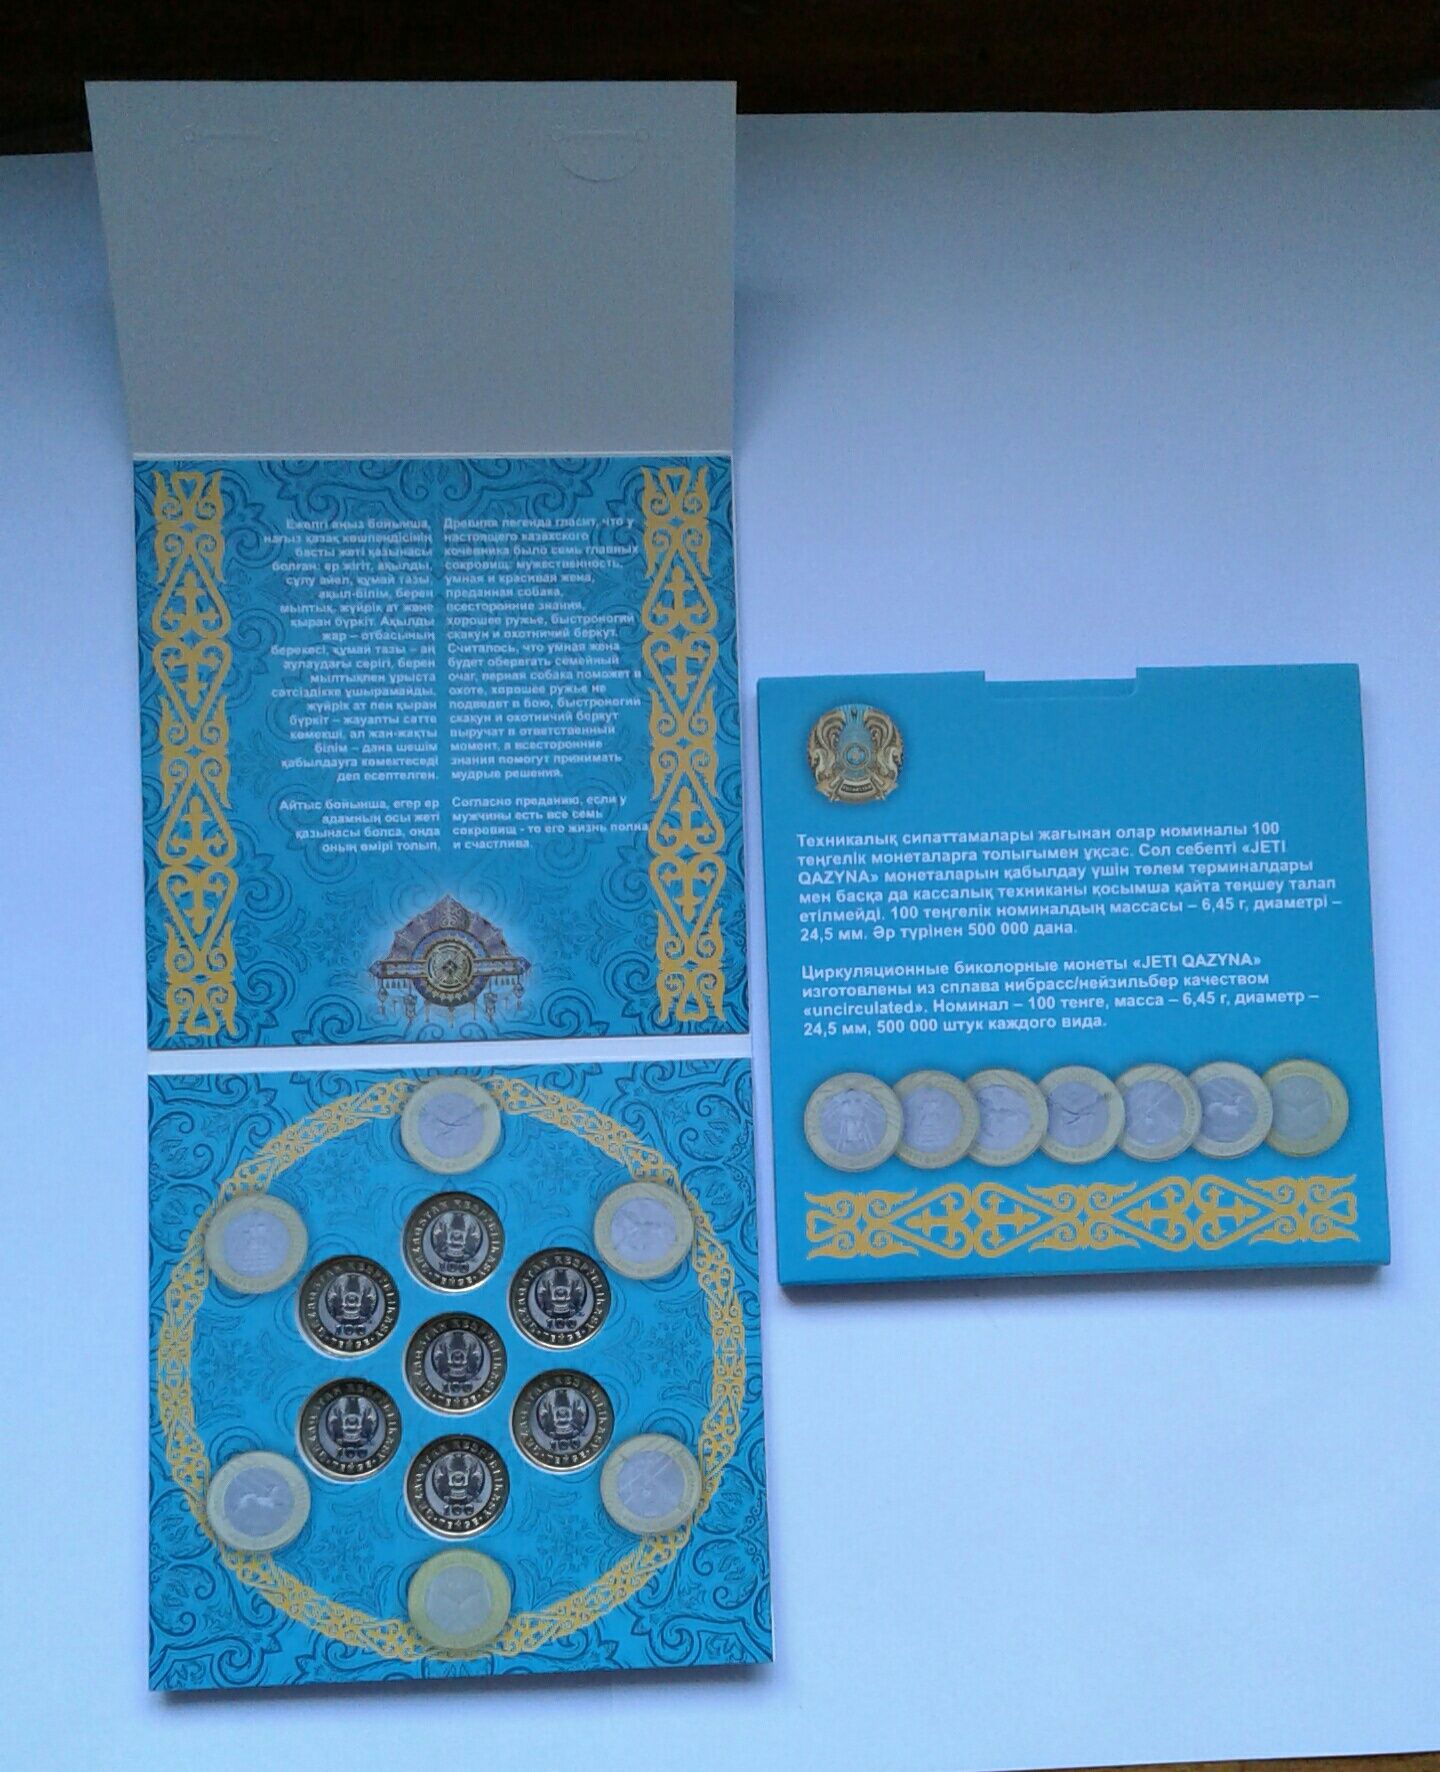 Набор монет Жети Казына в капсульном альбоме трансформер